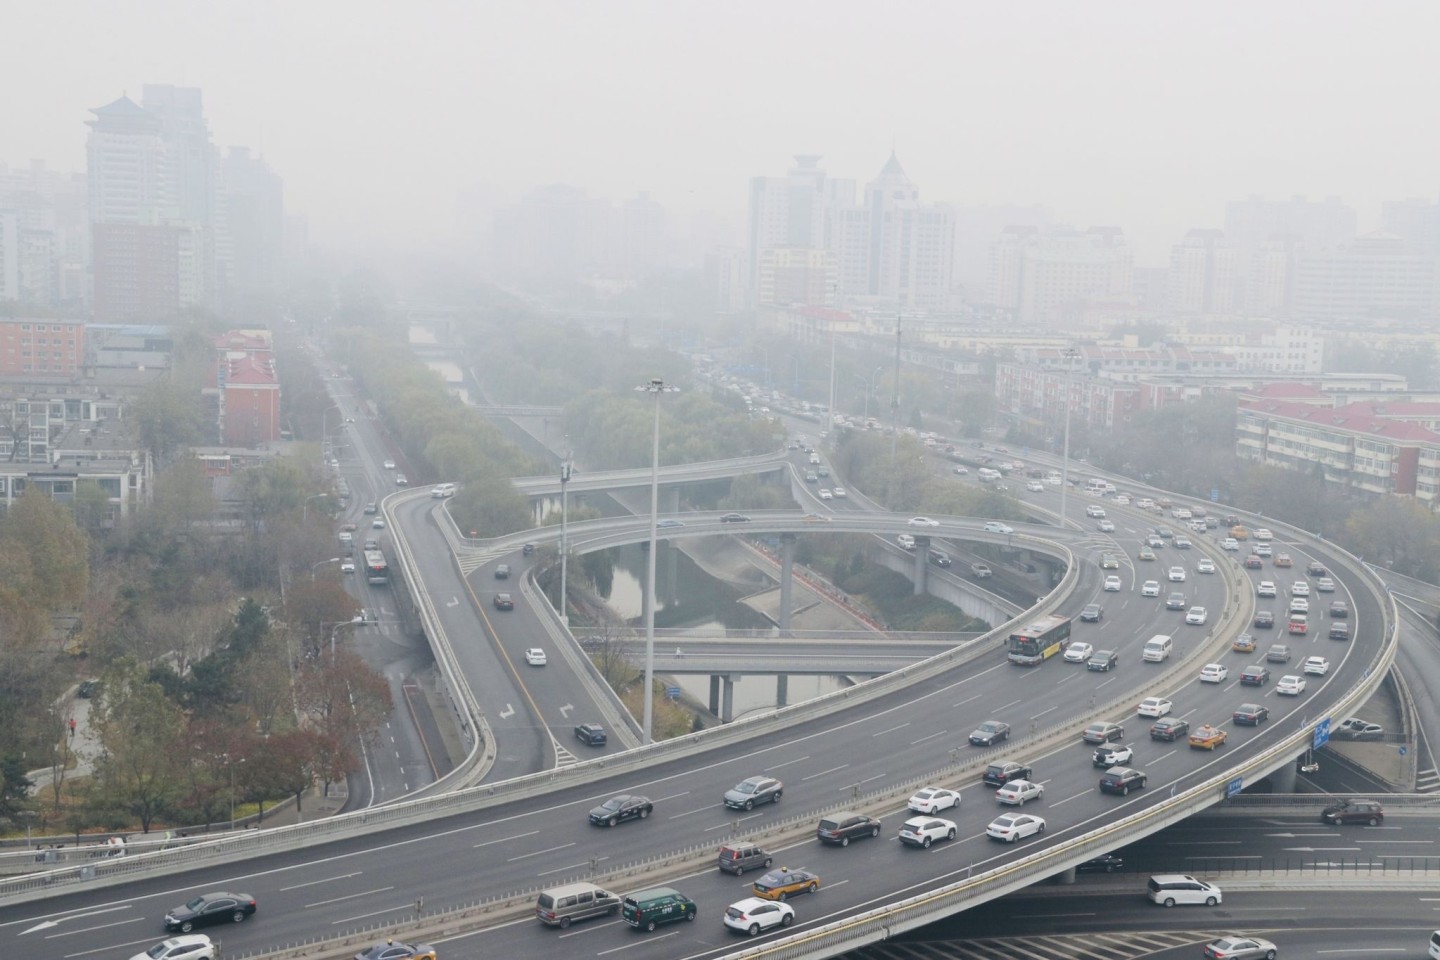 Starker Smog über Peking. Dass sich das Klima sich durch Menschenhand katastrophal verändert, steht fest. Nun geht es um die Folgen und welche Anpassungen für Mensch und Natur nötig sind...